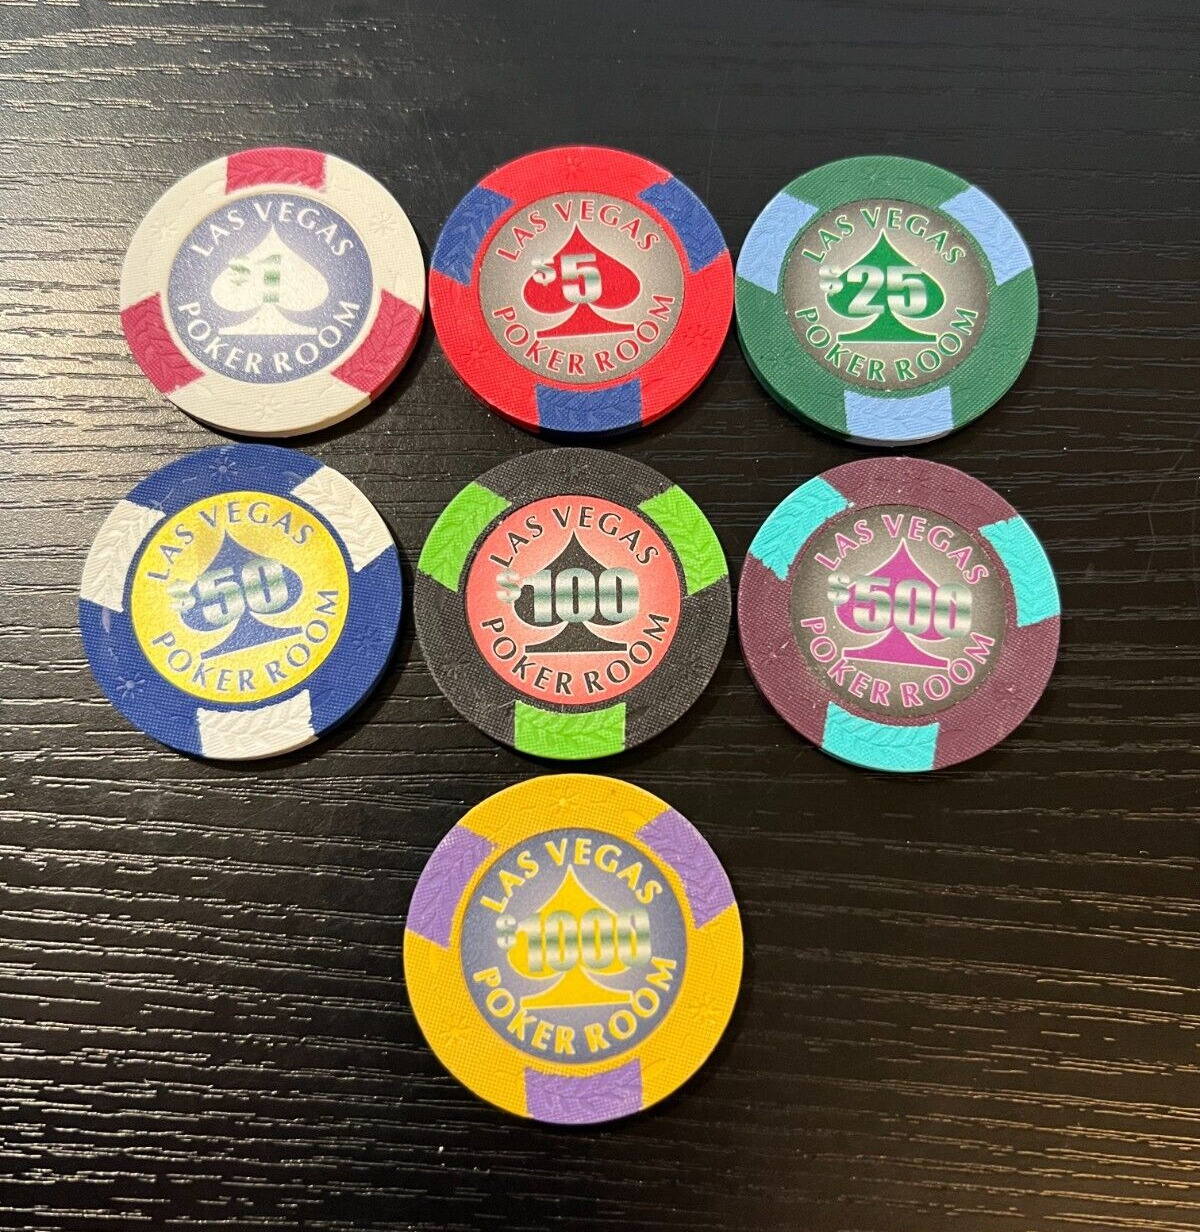 SET OF 7 - Las Vegas Poker Room Poker Chips - Sample Set - New - $1 $5 $ 10 $25